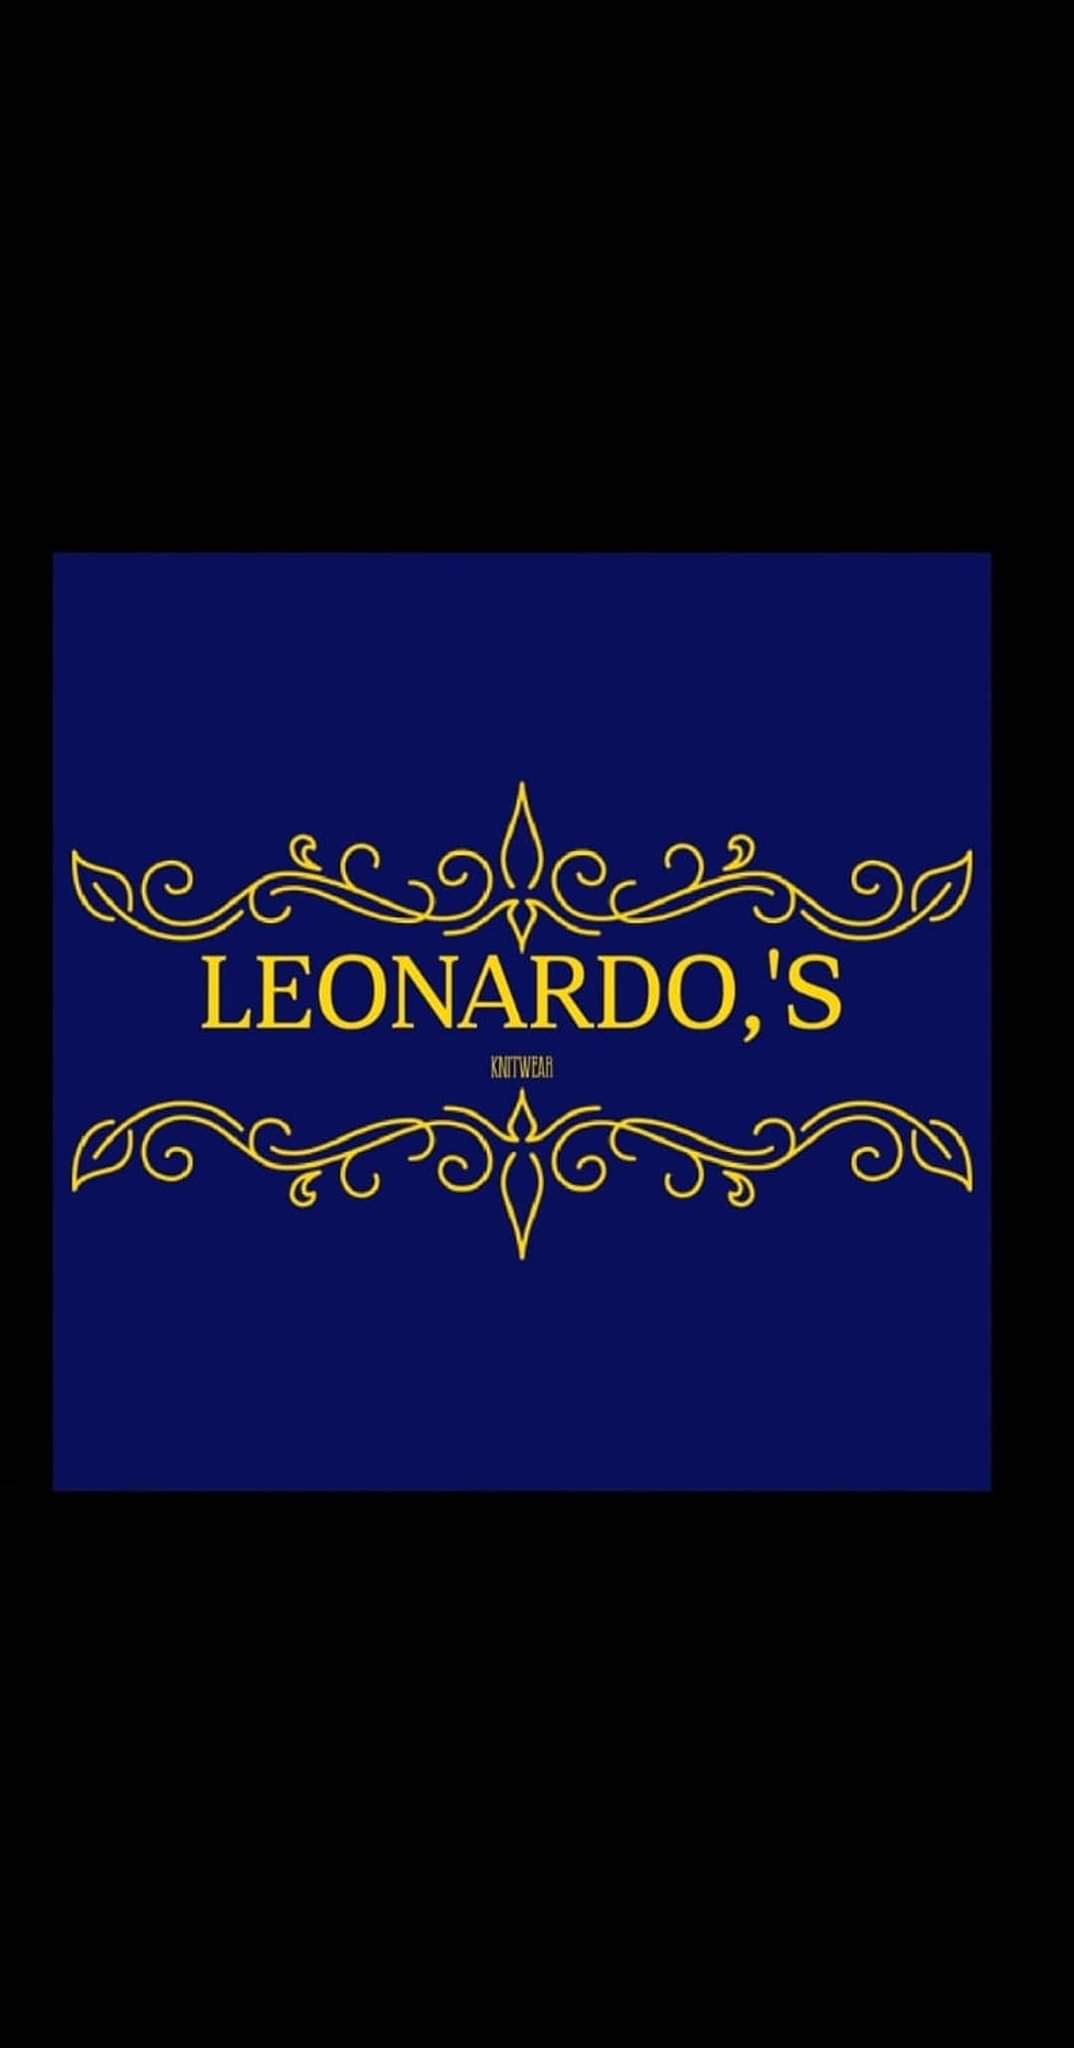 Leonardo's knitwear